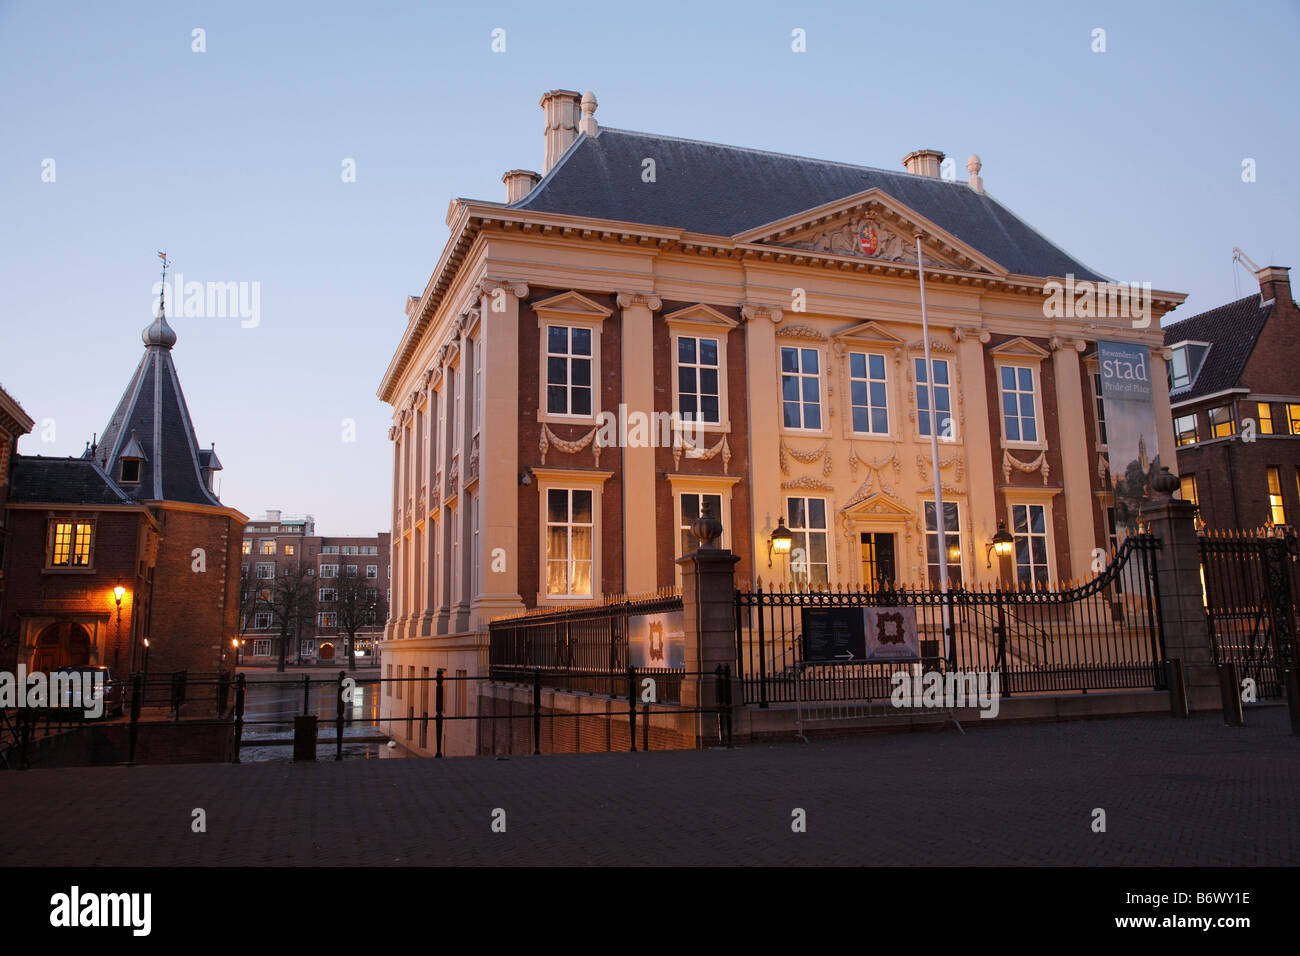 Mauritshuis art museum, Hague, Netherlands Stock Photo